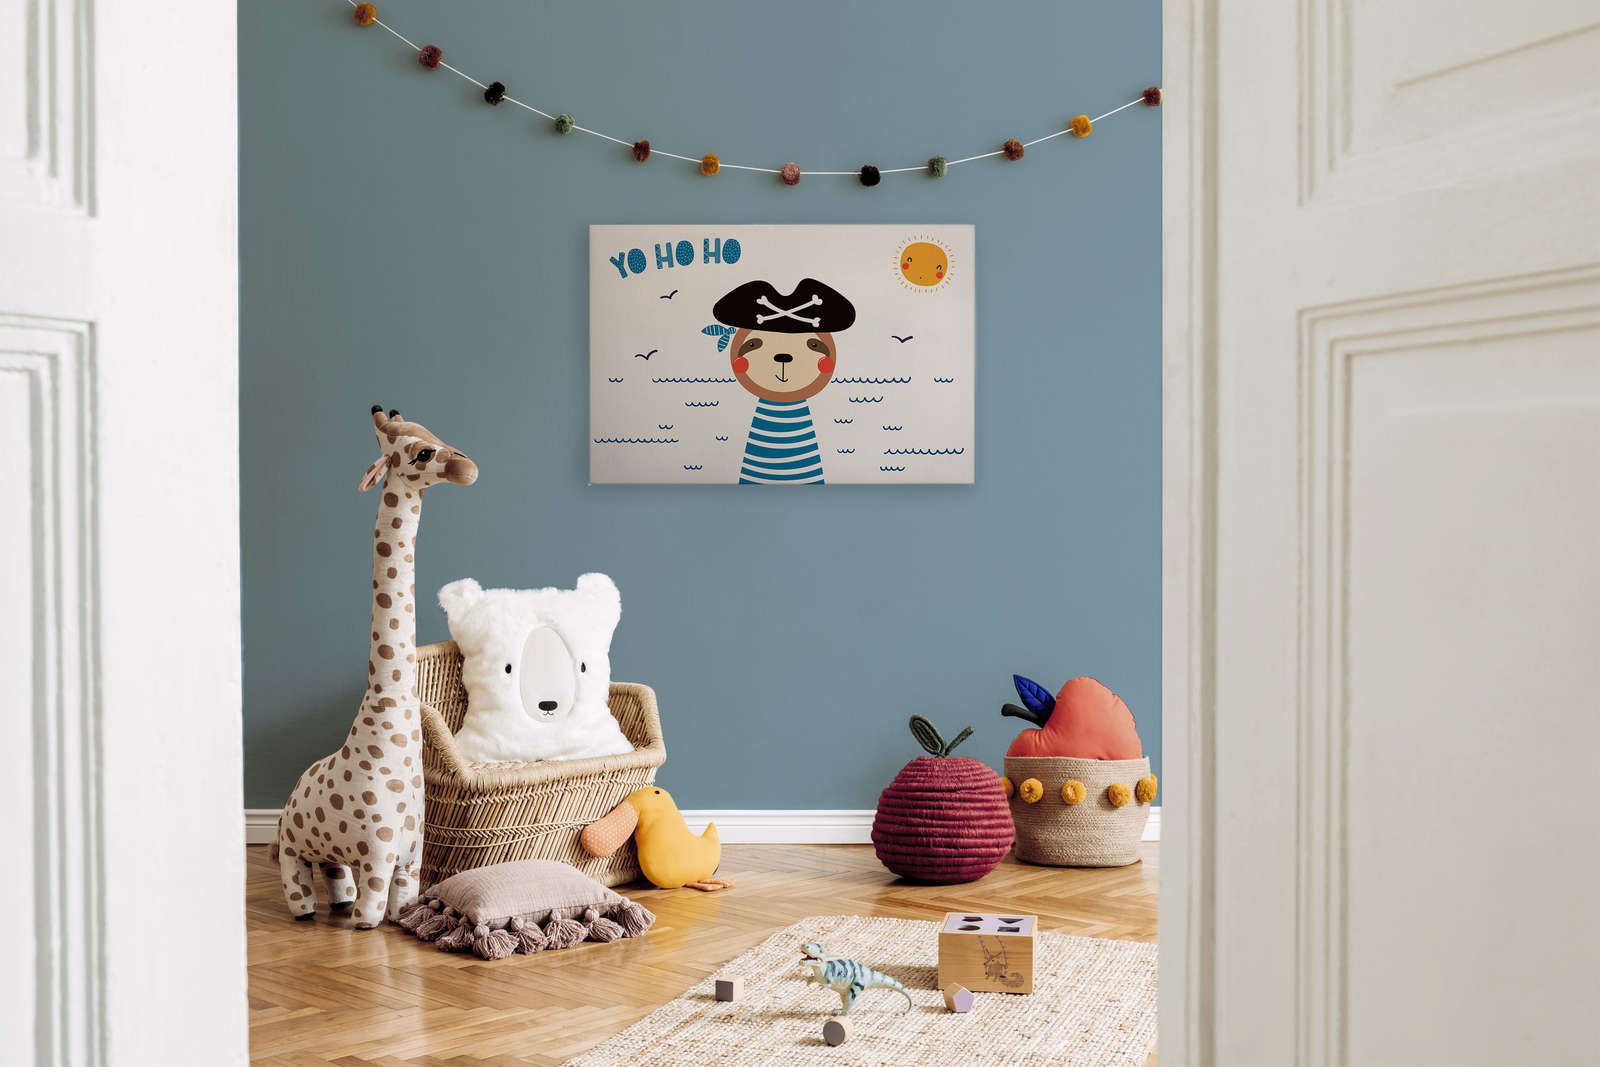             Lienzo para habitación infantil con oso pirata - 90 cm x 60 cm
        